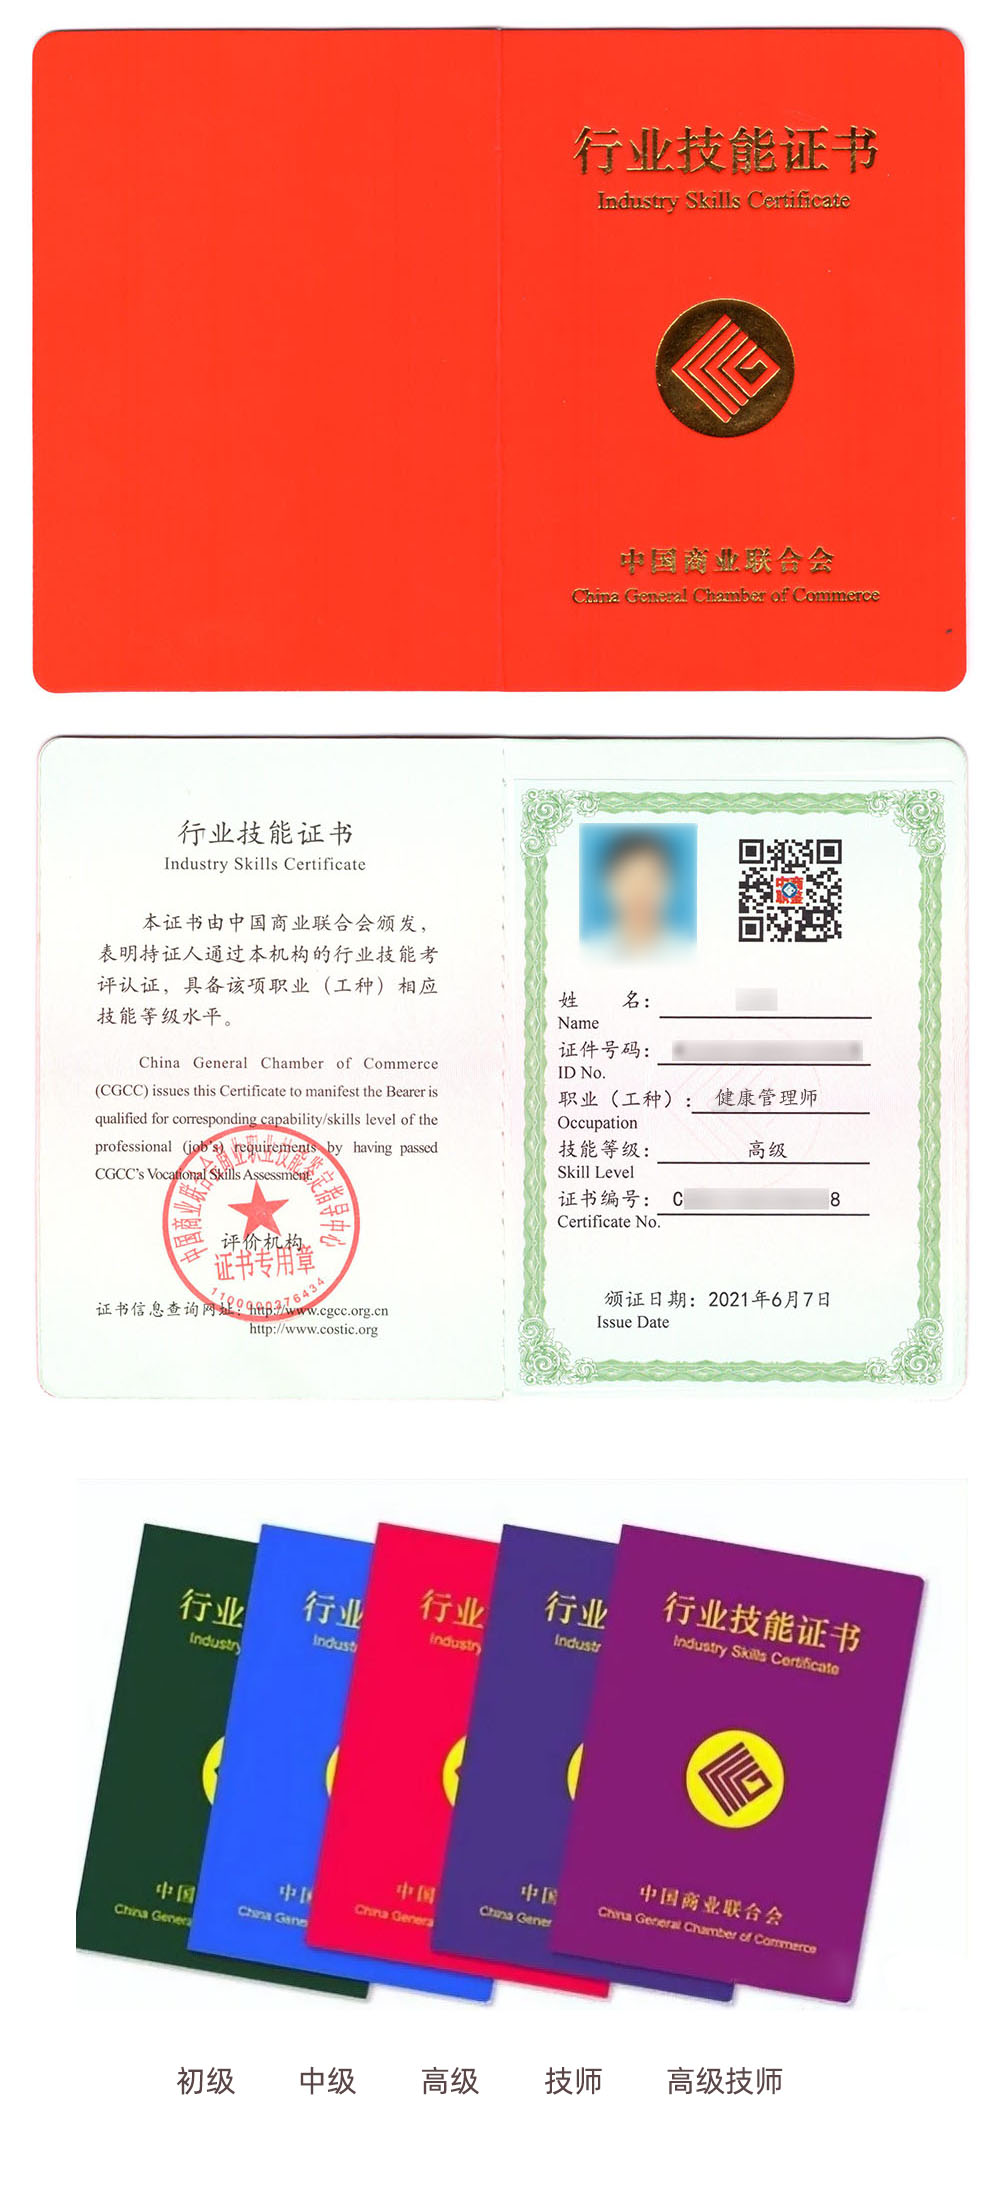 中国商业联合会商业职业技能鉴定指导中心 行业技能证书 健康管理师证书样本